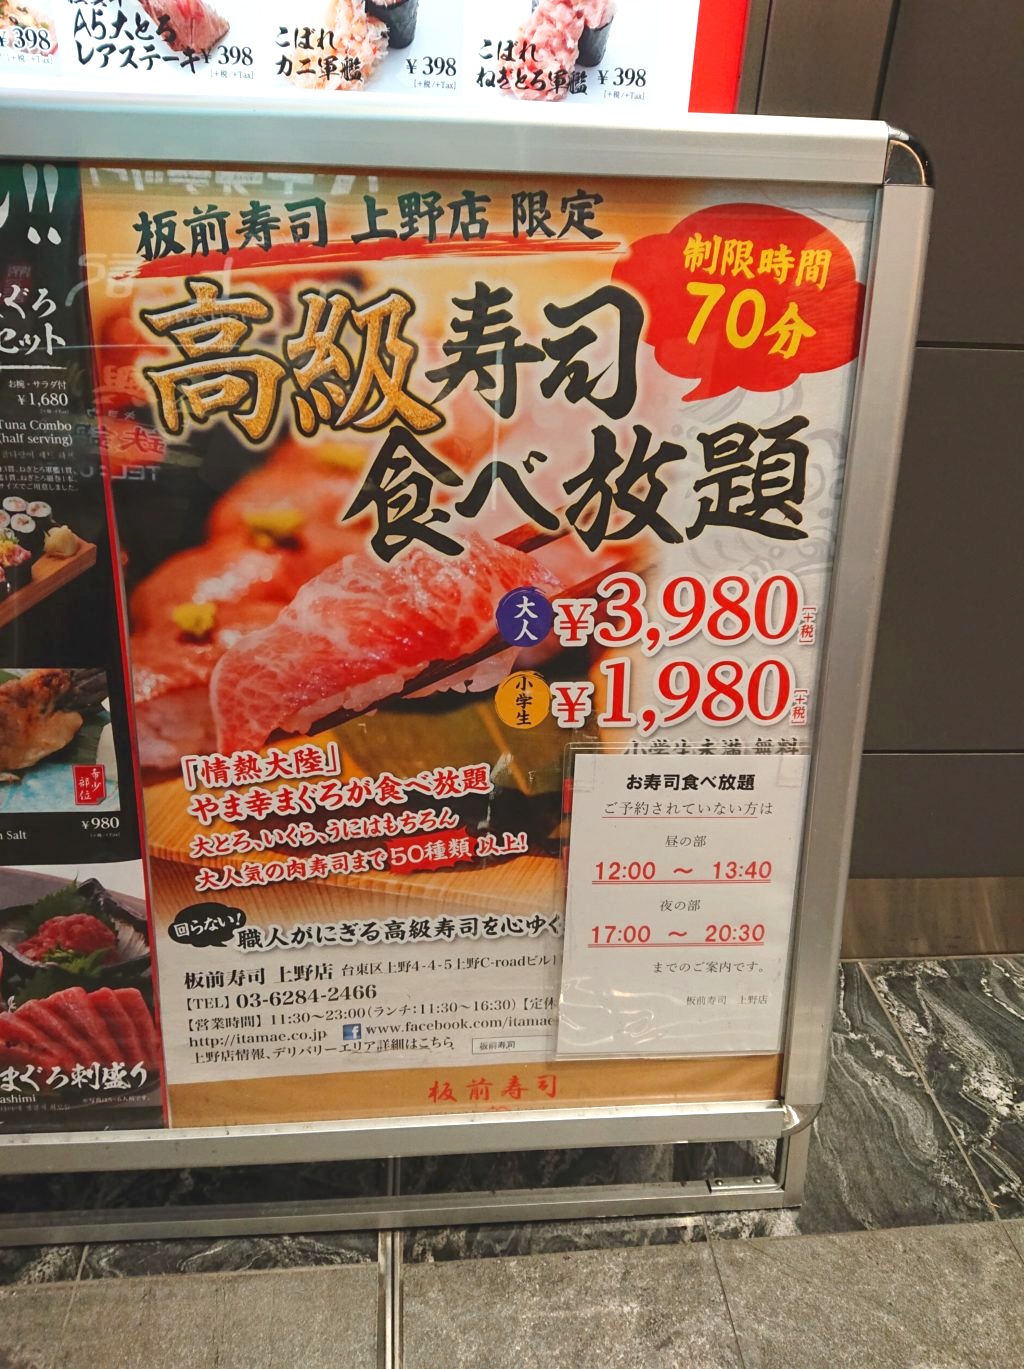 3,980円で高級寿司食べ放題！